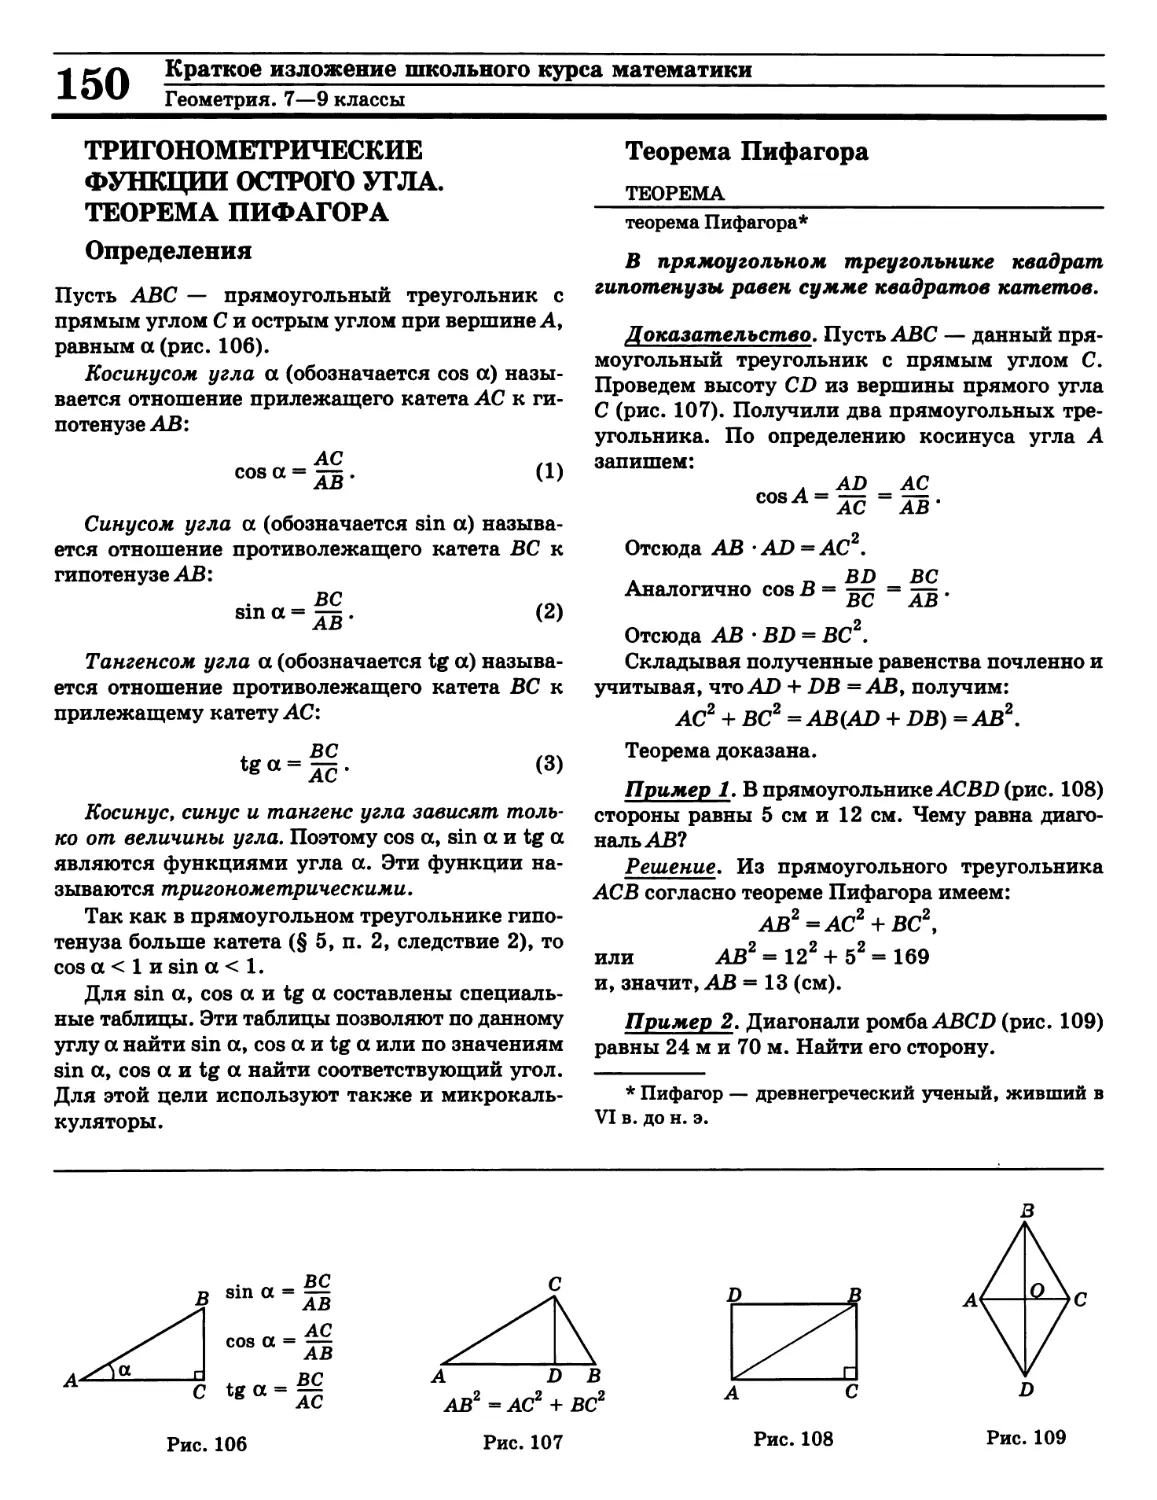 Косинус
Синус
Тангенс
Теорема Пифагора
Тригонометрические функции острого угла